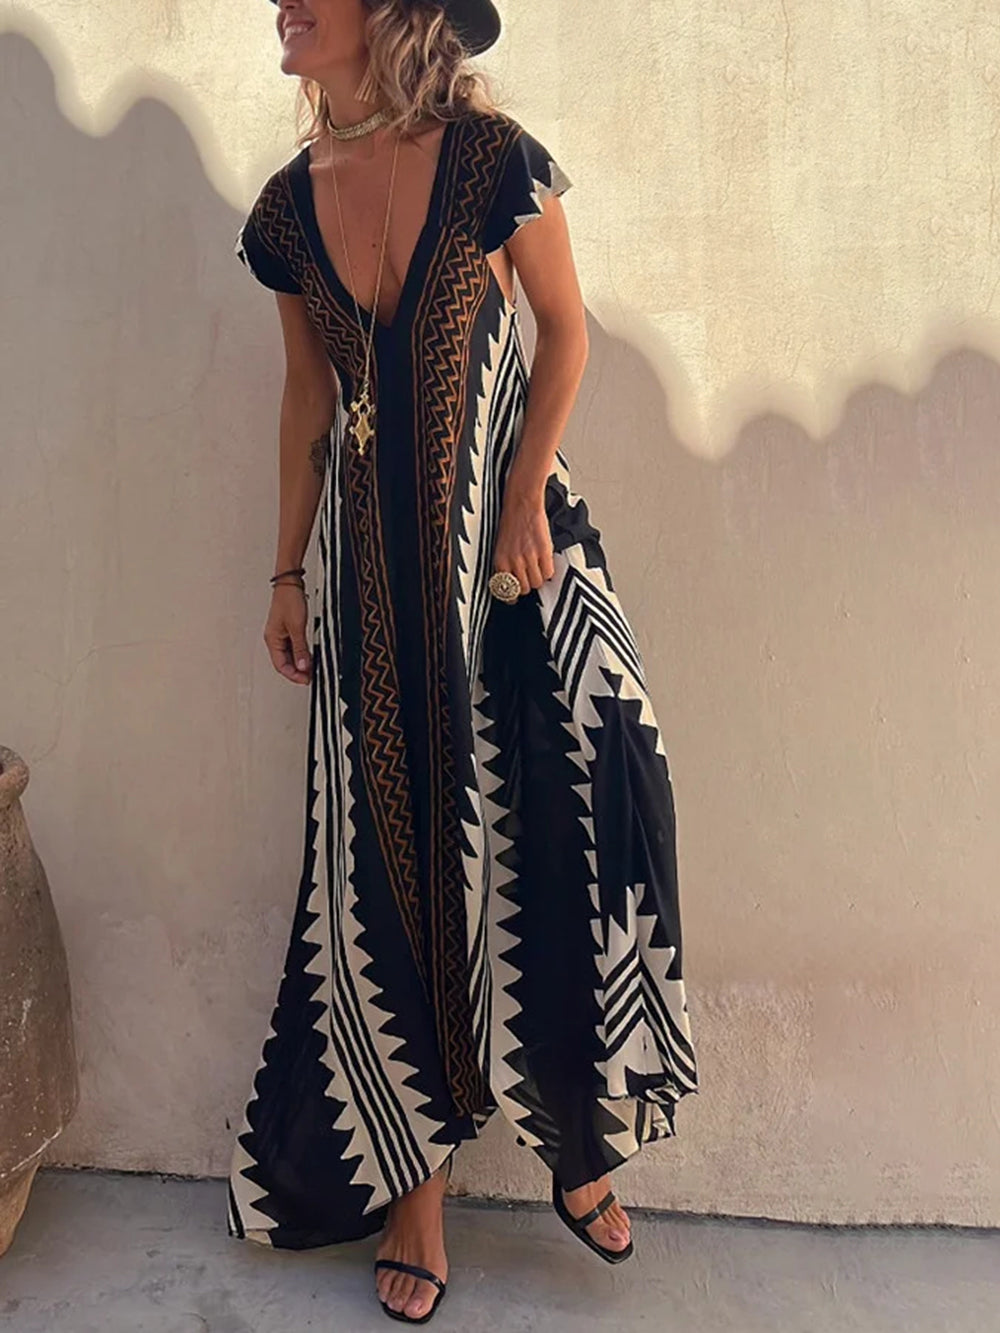 שמלת מקסי בהדפס של שאנון בוהמייני אצטקי